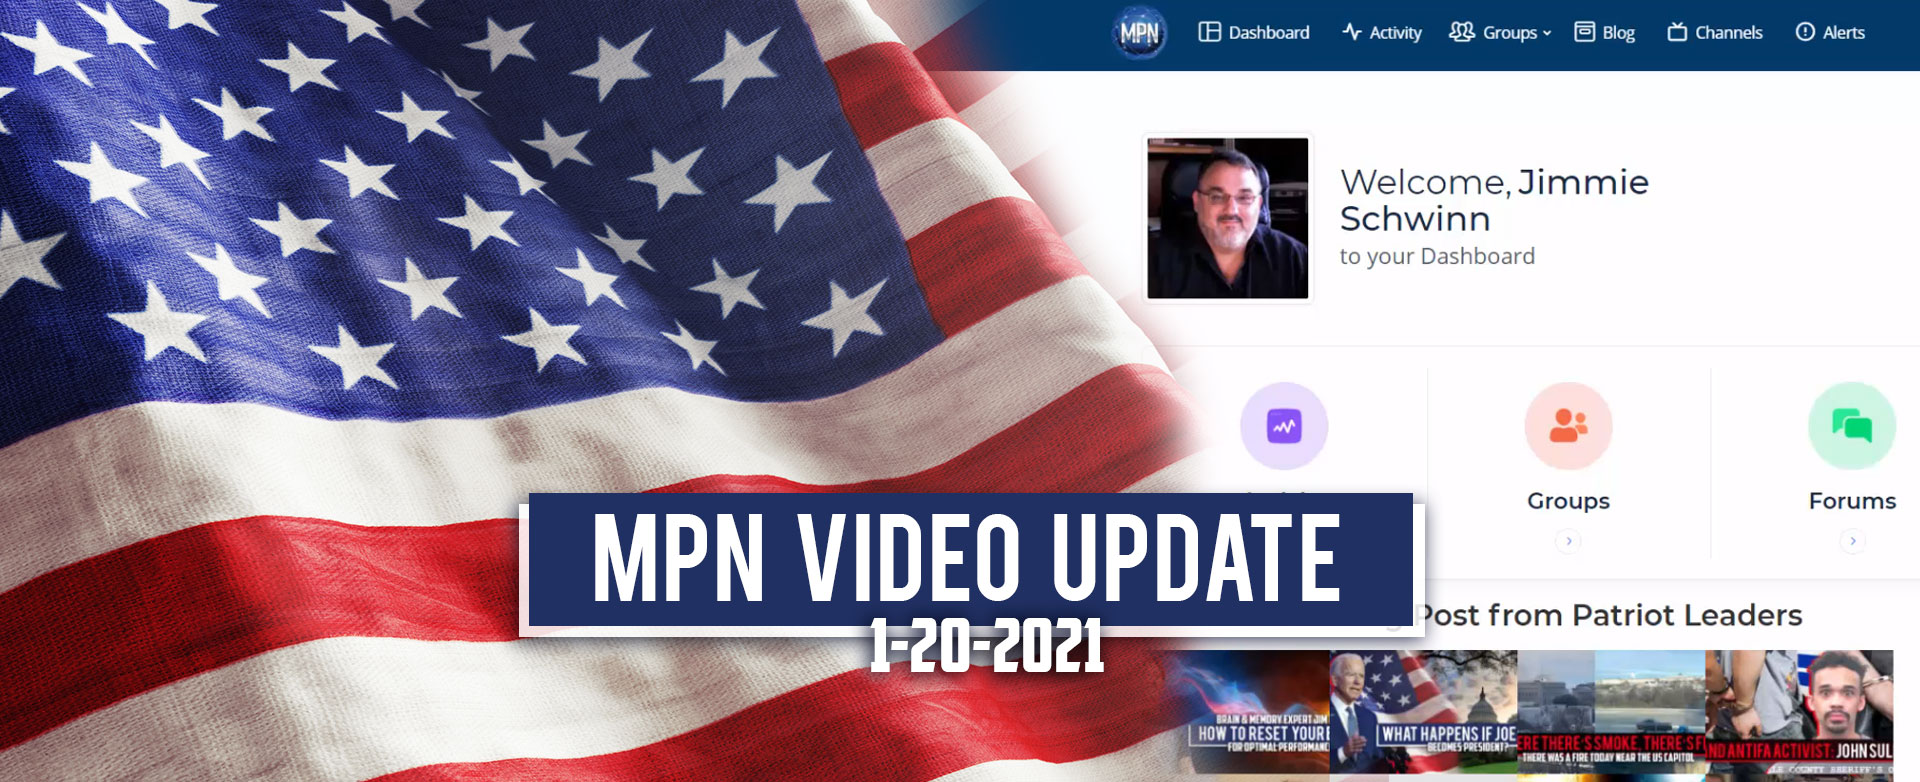 MyPatriotsNetwork-MPN Video Update 1-20-2021